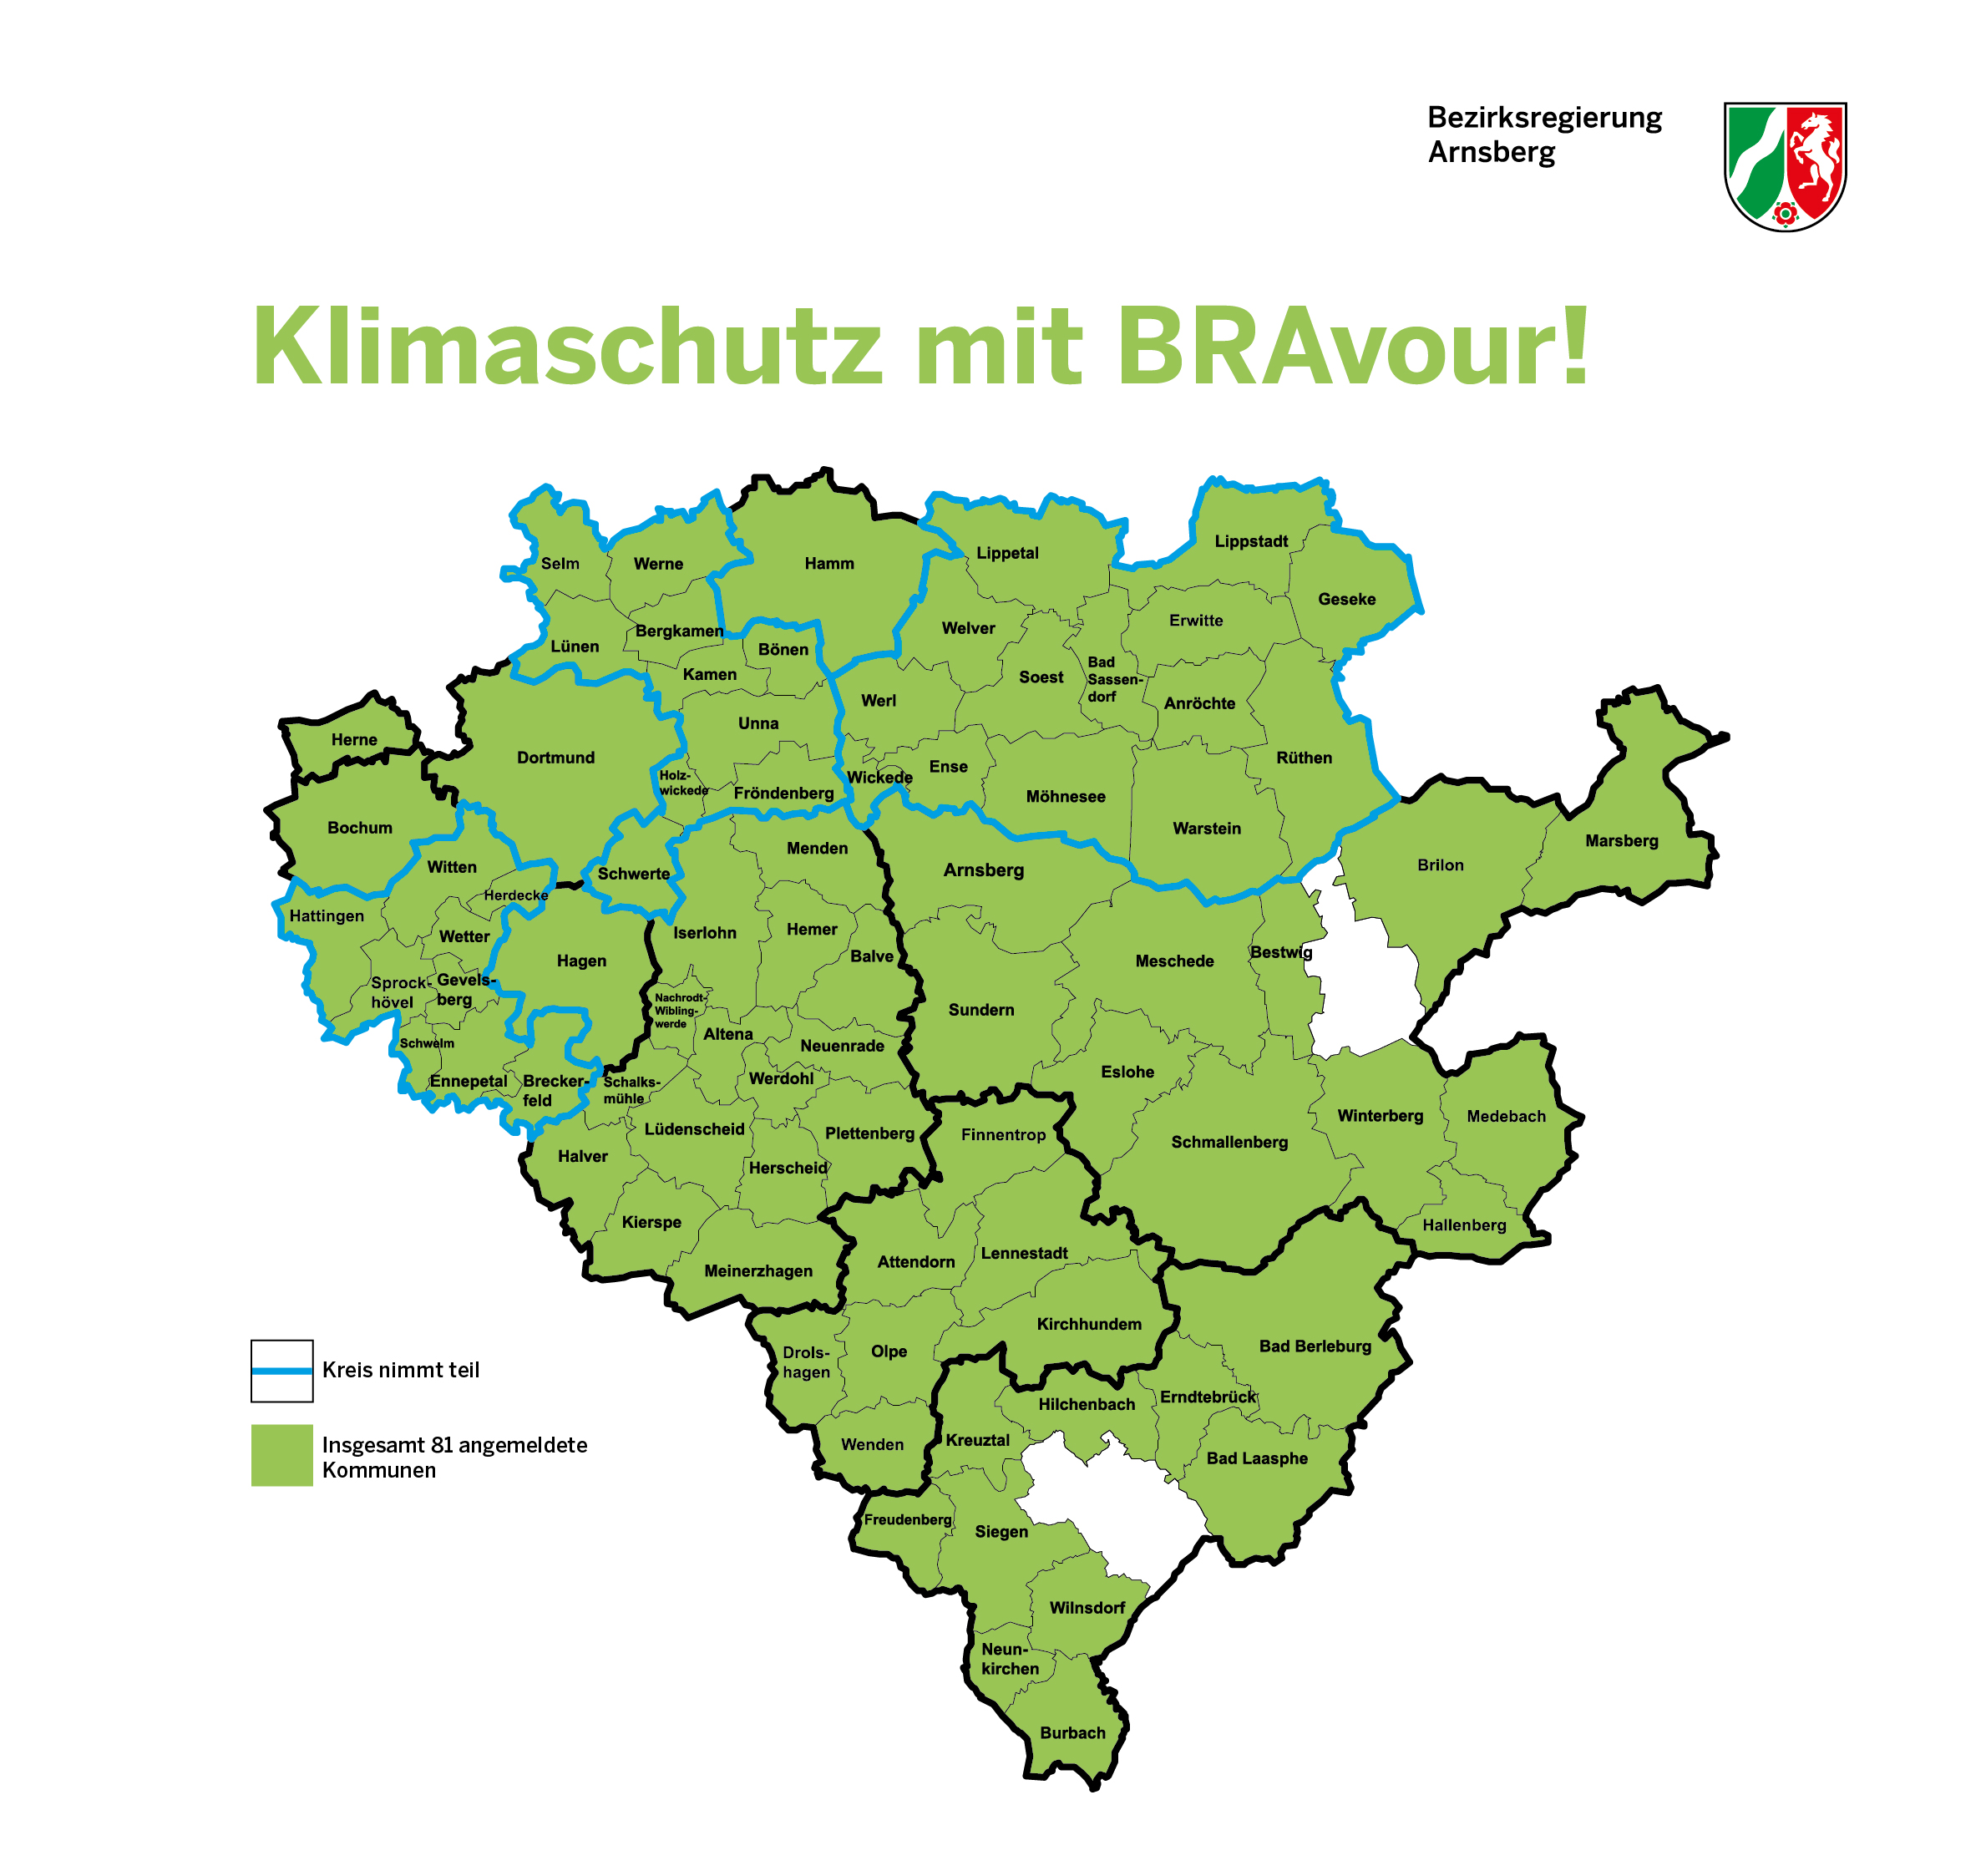 Teilnehmende Kommunen an der Klimakampagne im Regierungsbezirk Arnsberg